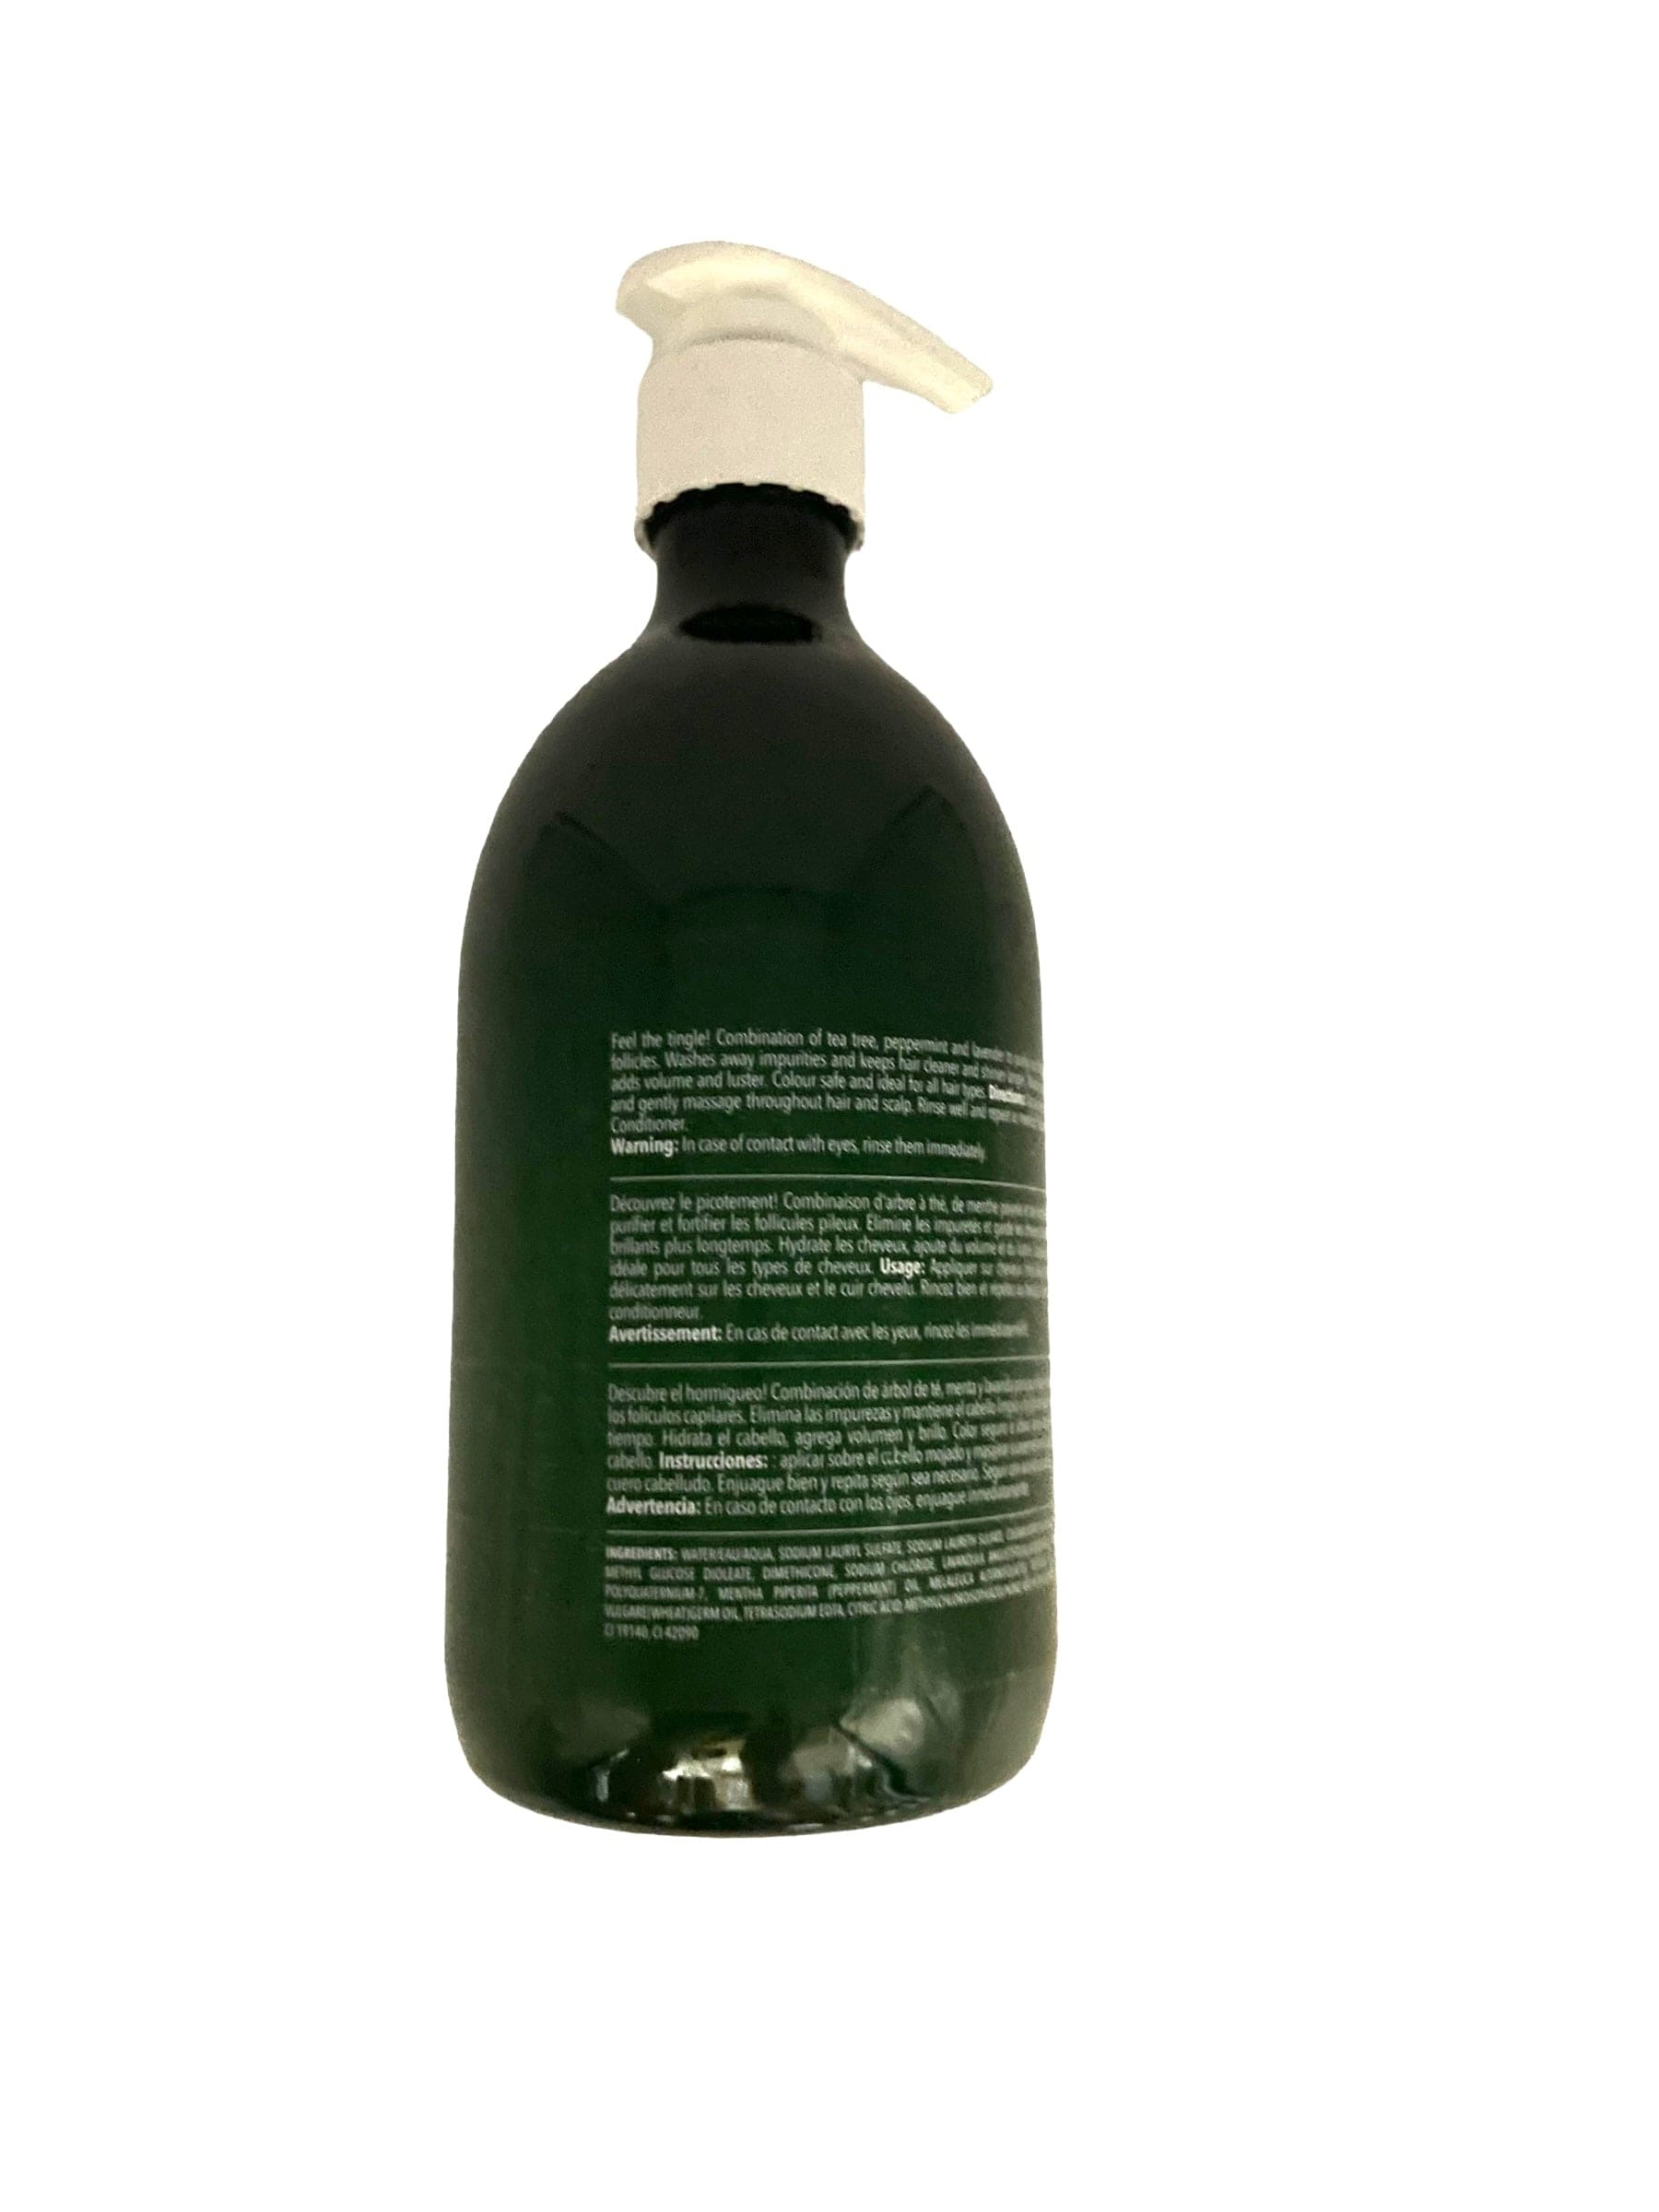 Tea Tree Shampoo Nywele Color Safe Hair Moisturizing 16.9 oz Shampoo